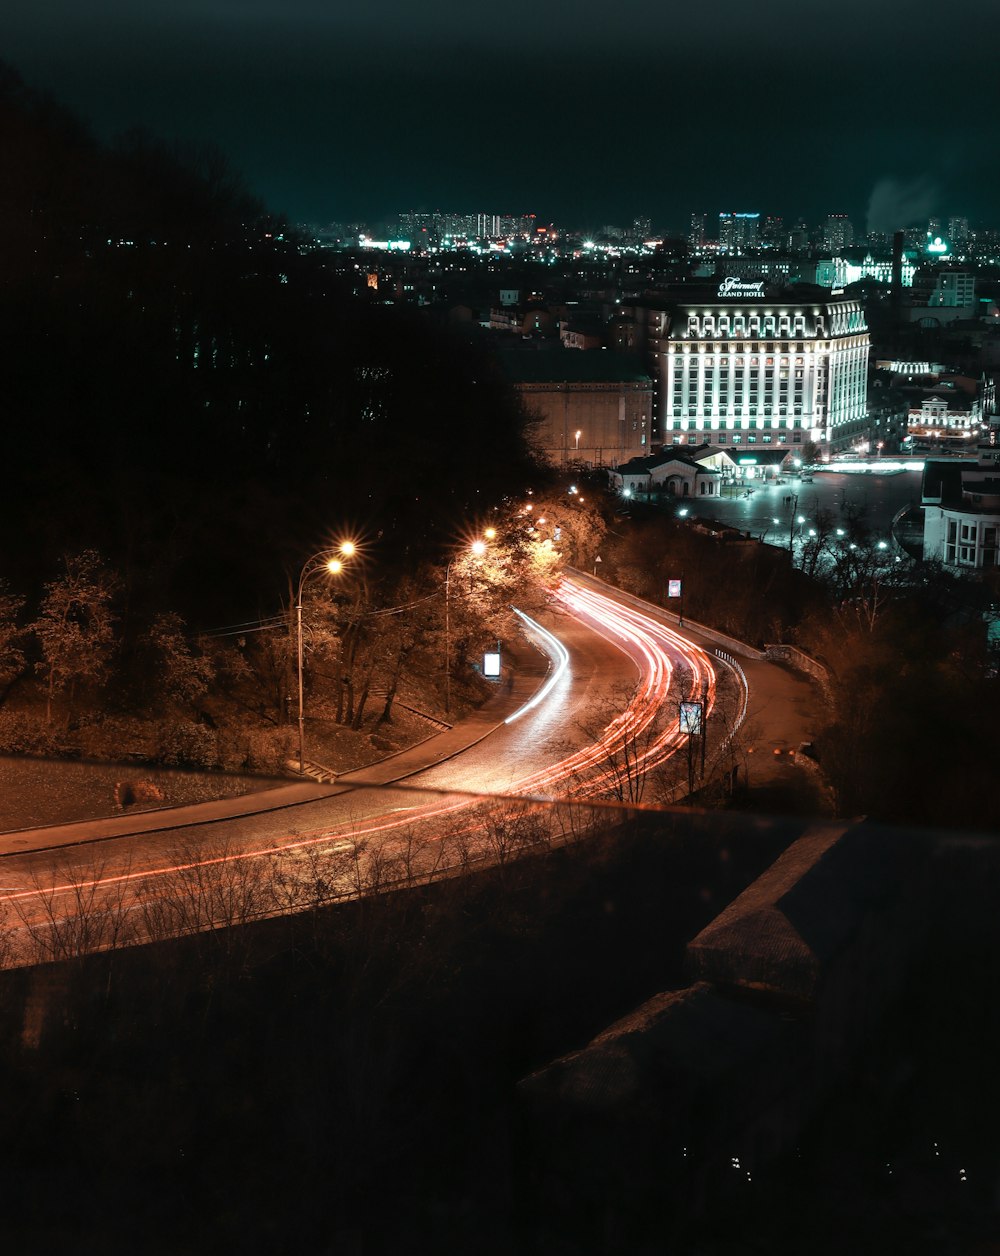 Fotografía de lapso de tiempo de automóviles en carretera durante la noche